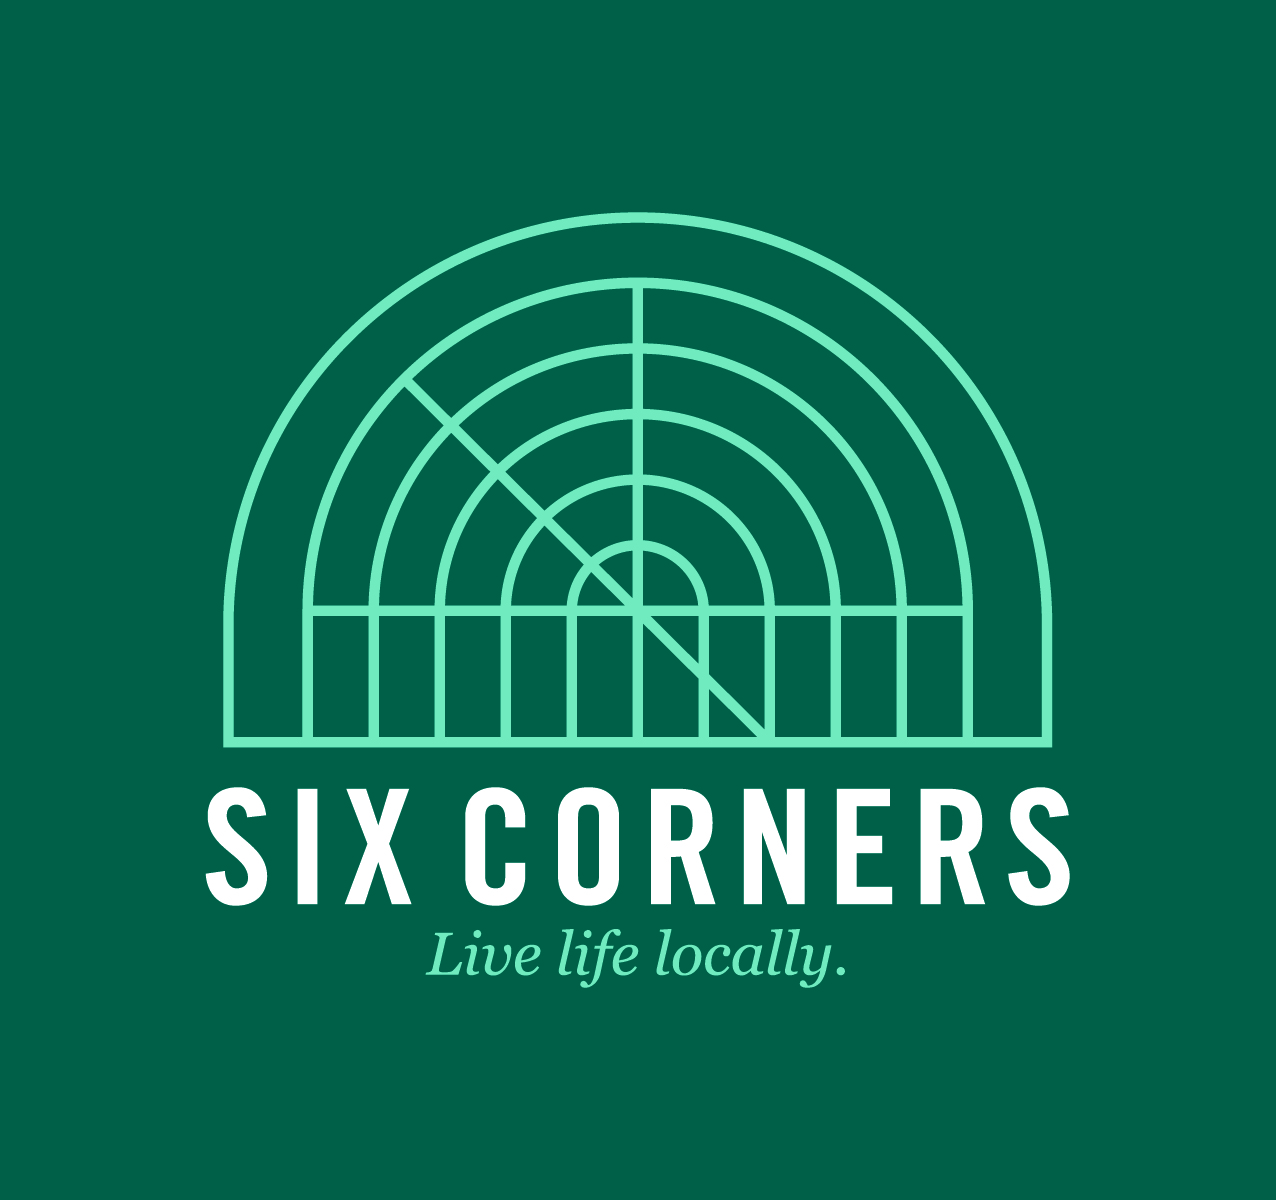 Six Corners. 6 Corners. Live corners